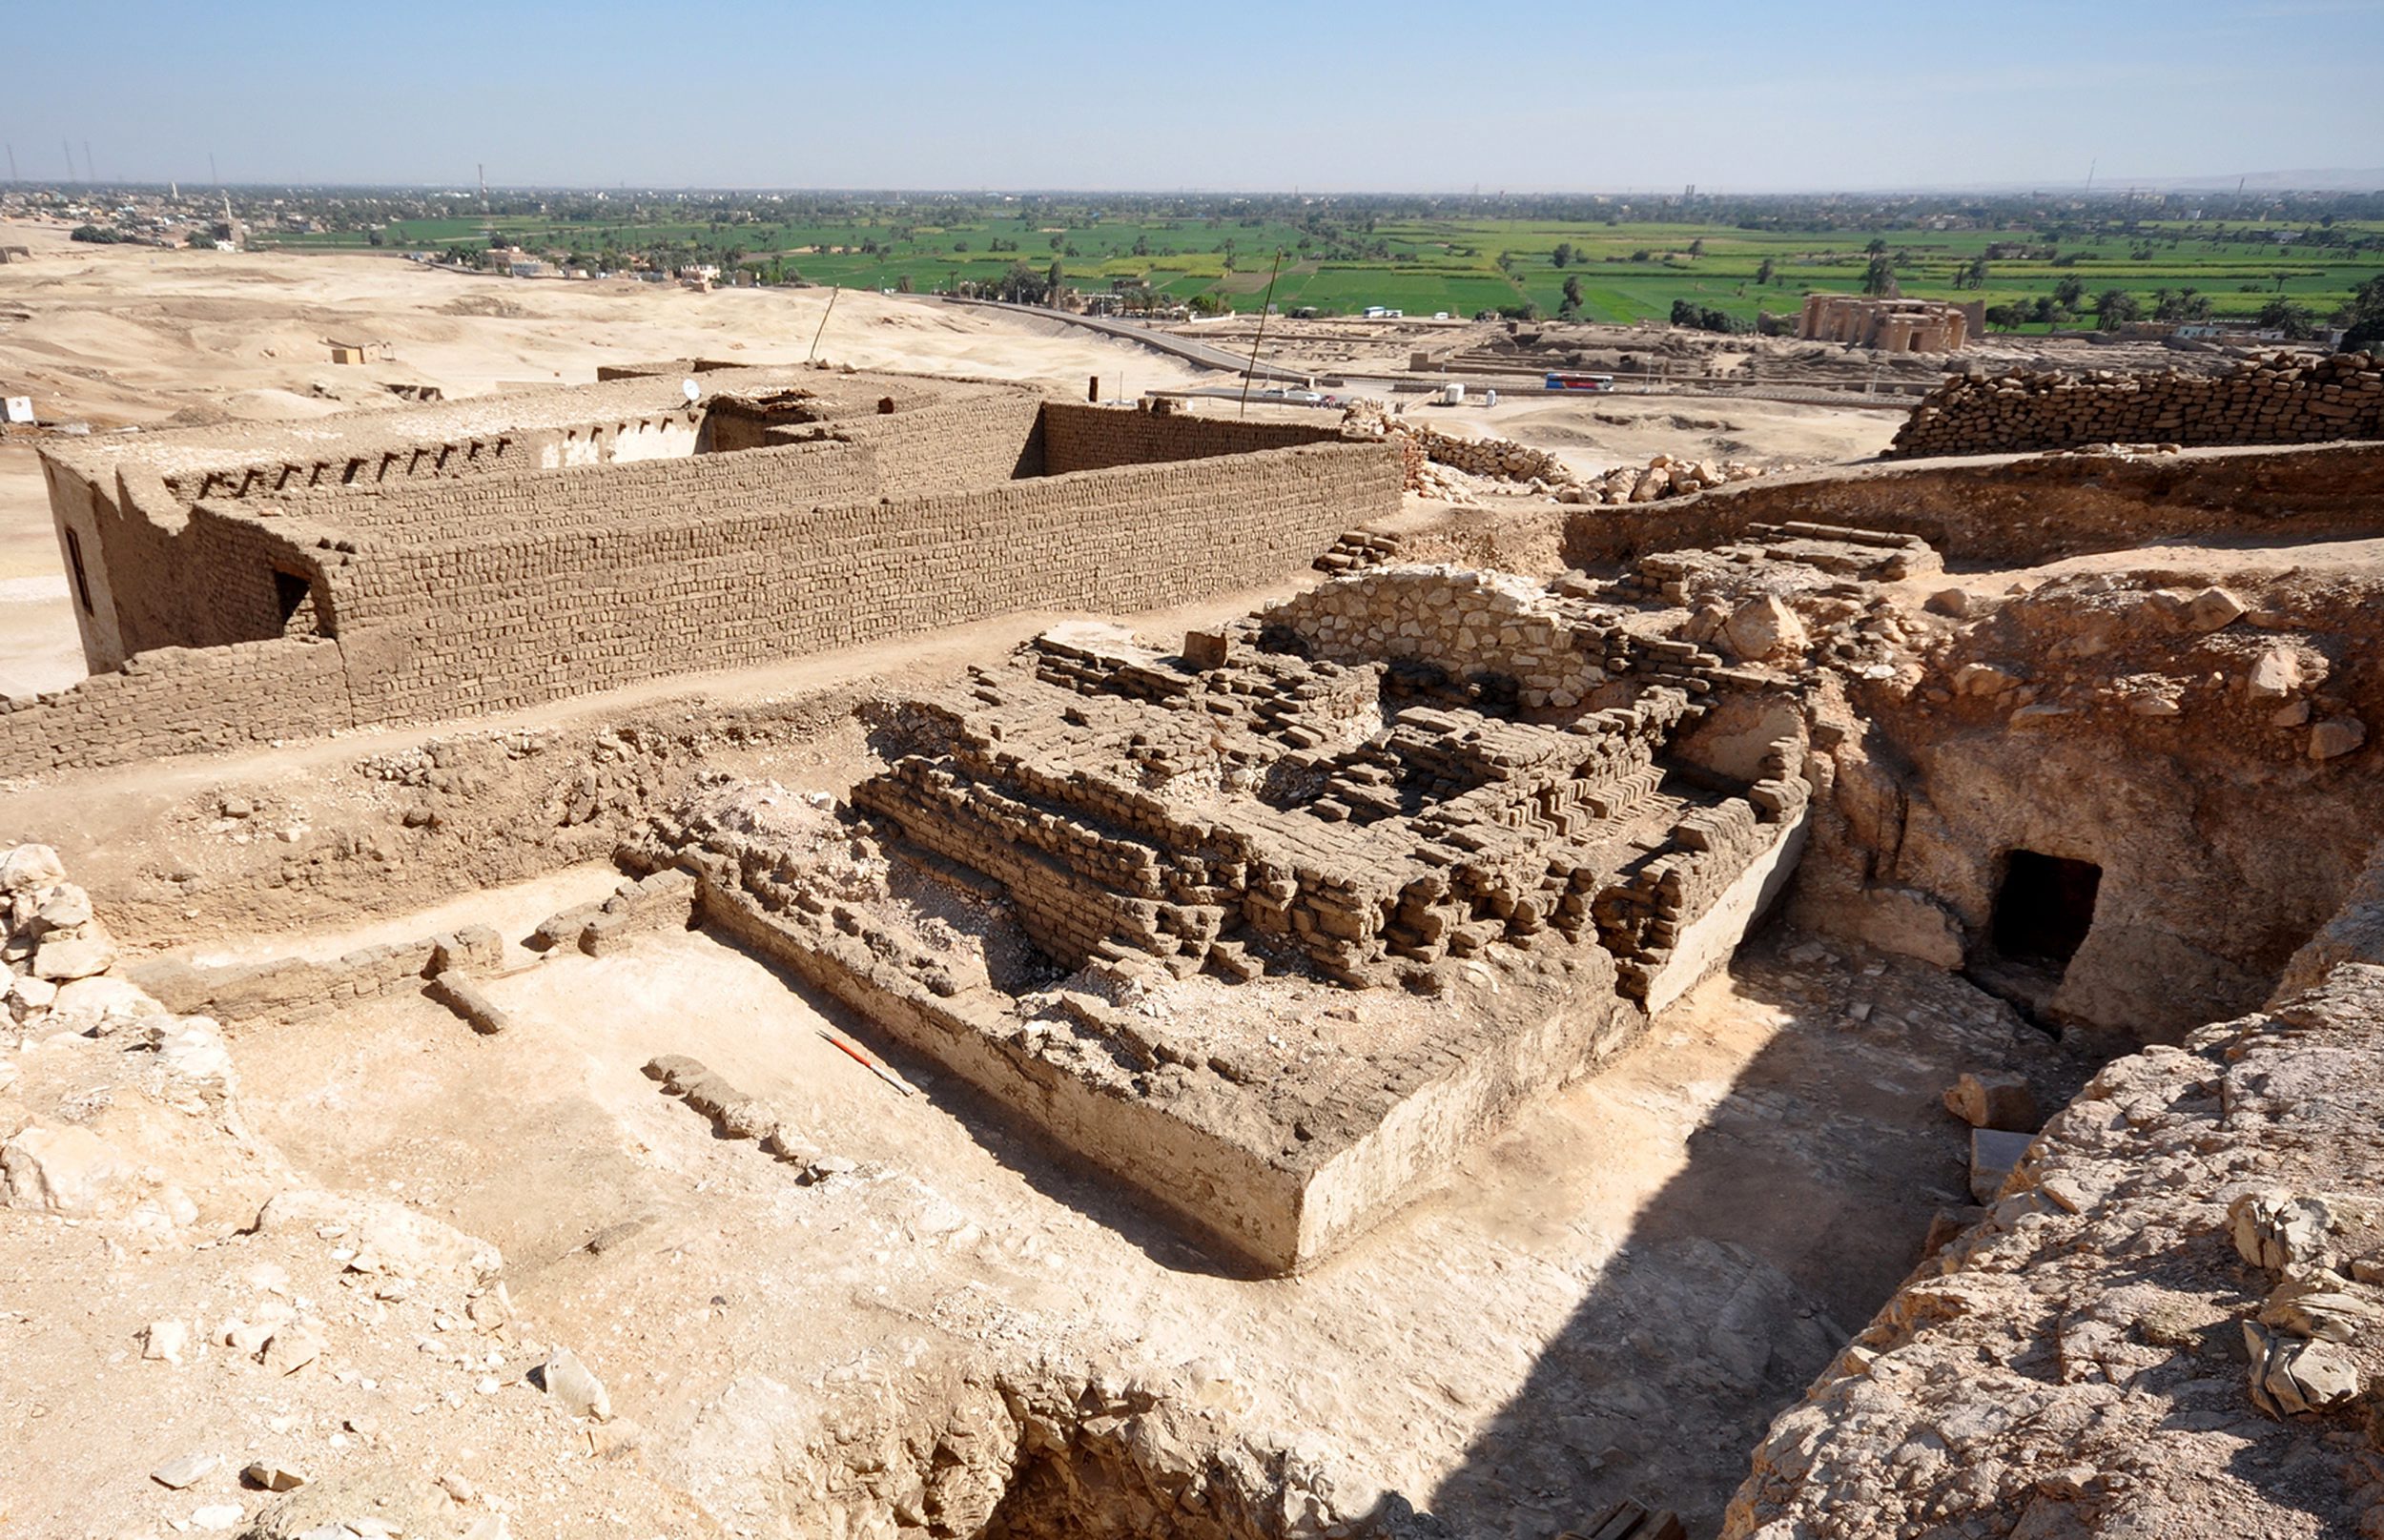 Αίγυπτος: Ανακαλύφθηκε πυραμίδα ηλικίας άνω των 3.000 χρόνων